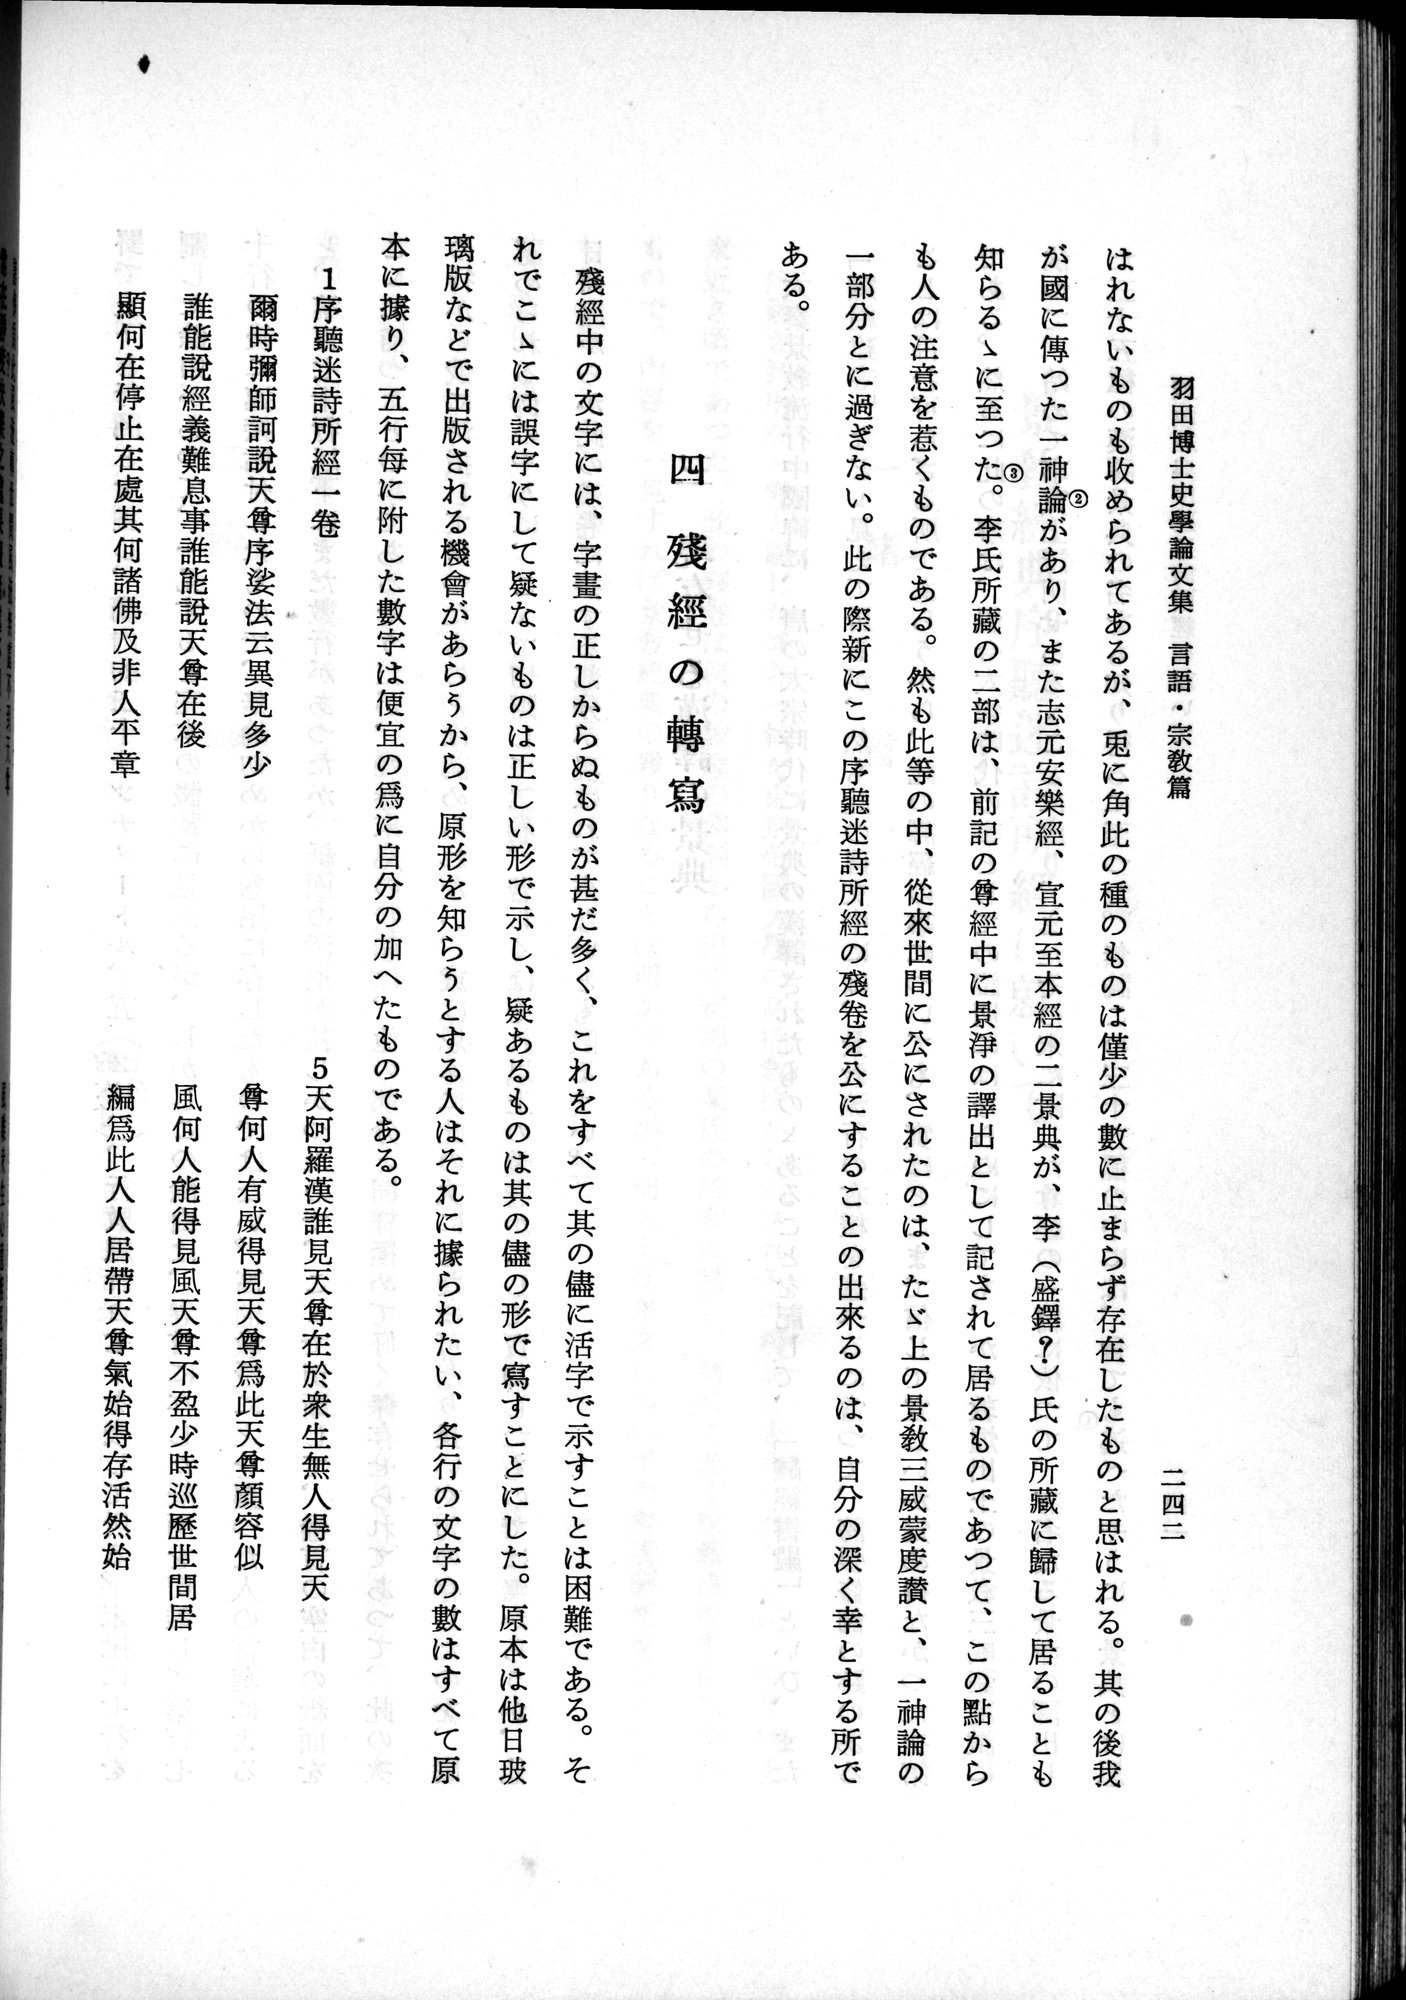 羽田博士史学論文集 : vol.2 / Page 304 (Grayscale High Resolution Image)